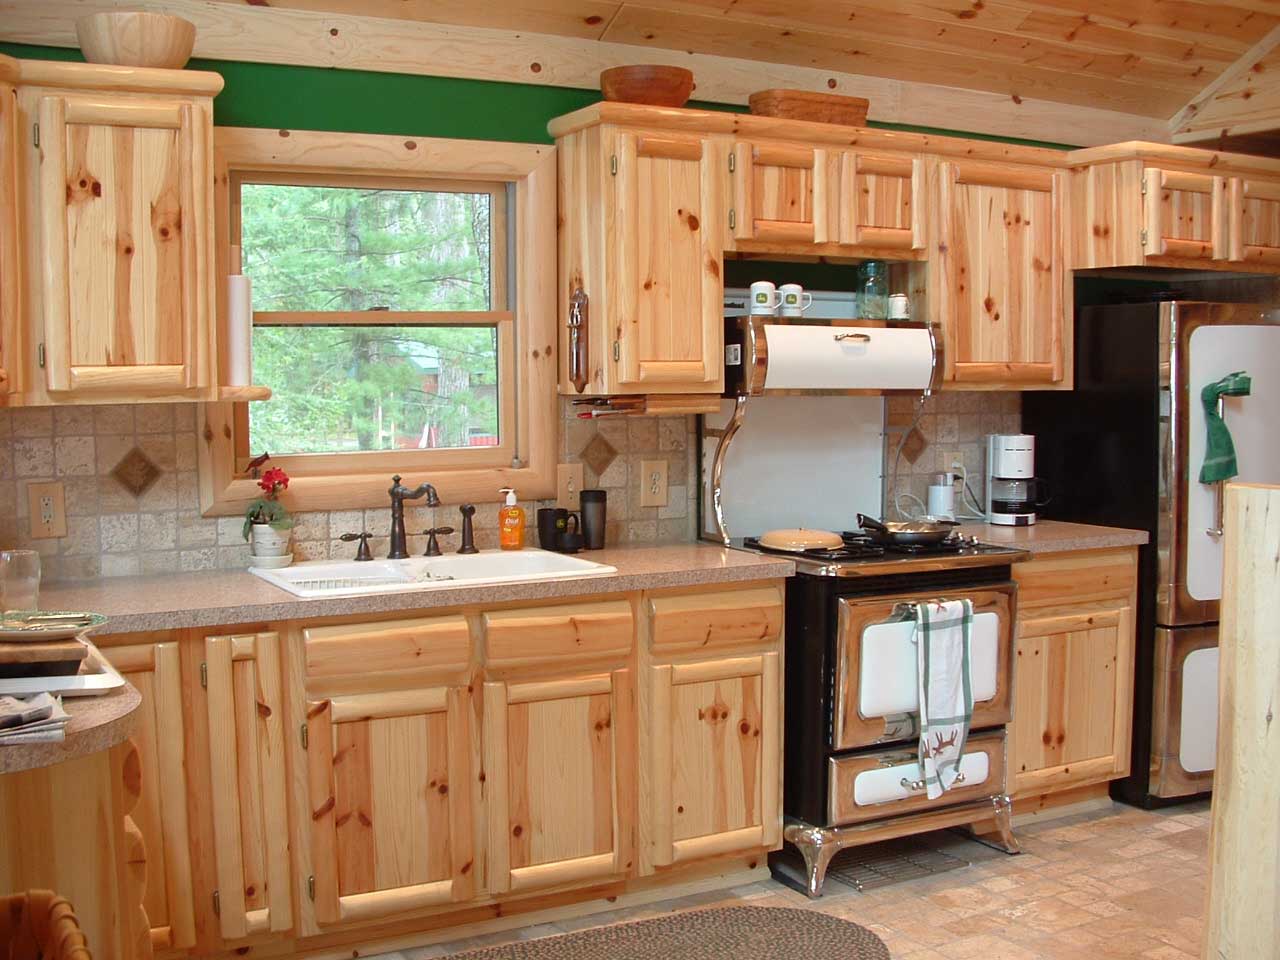 Pine kitchen cabinets